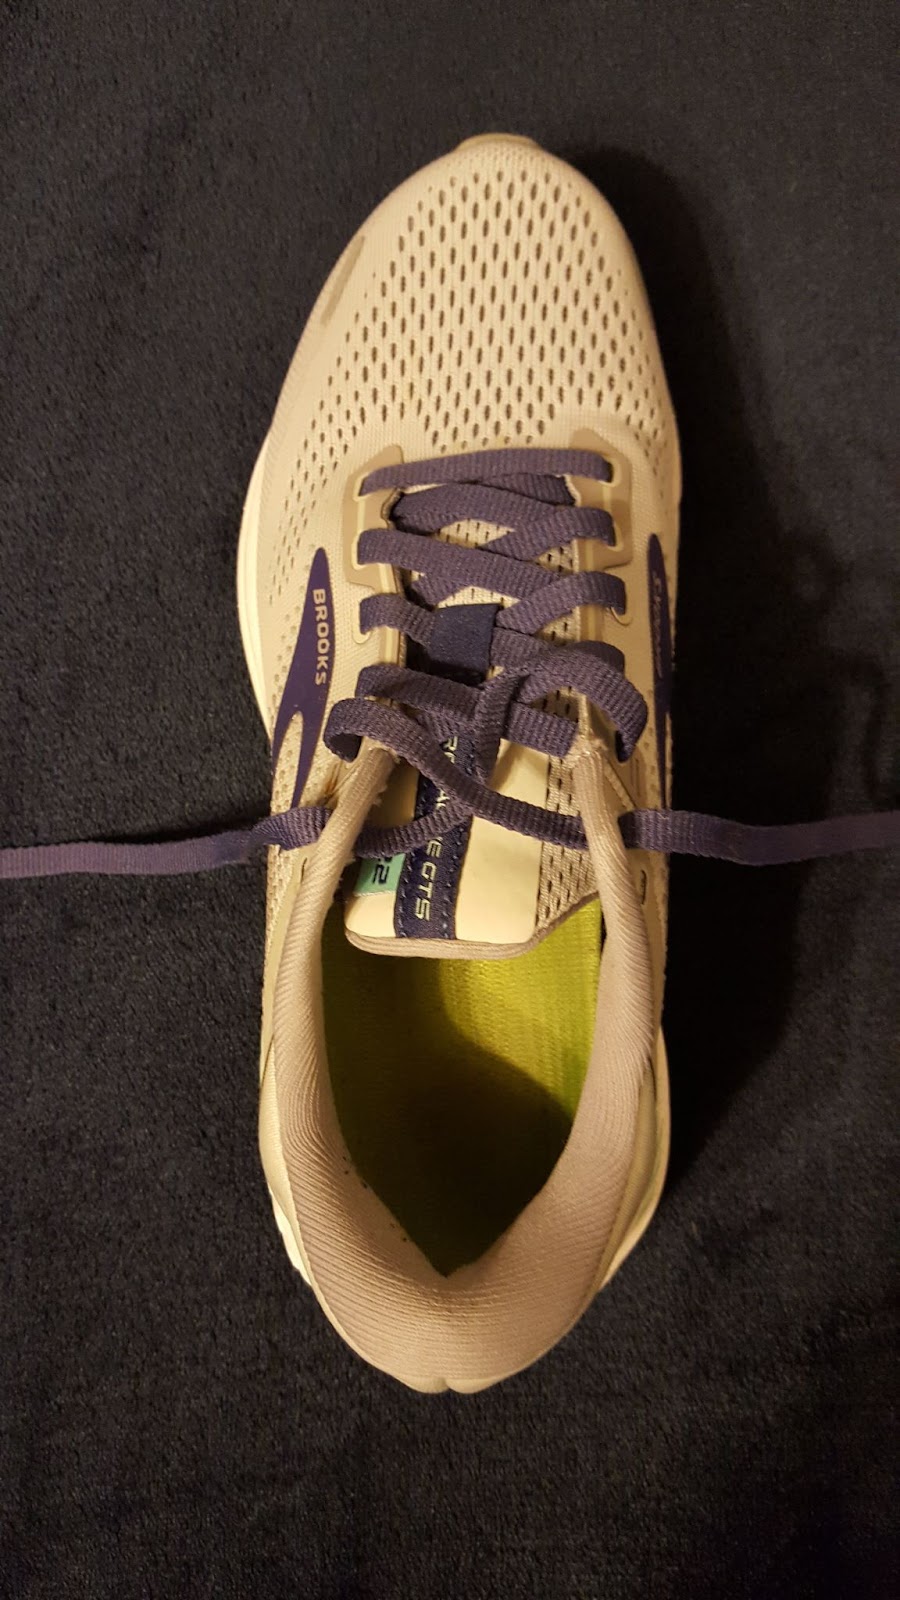 A cross cross lacing shoe pattern.